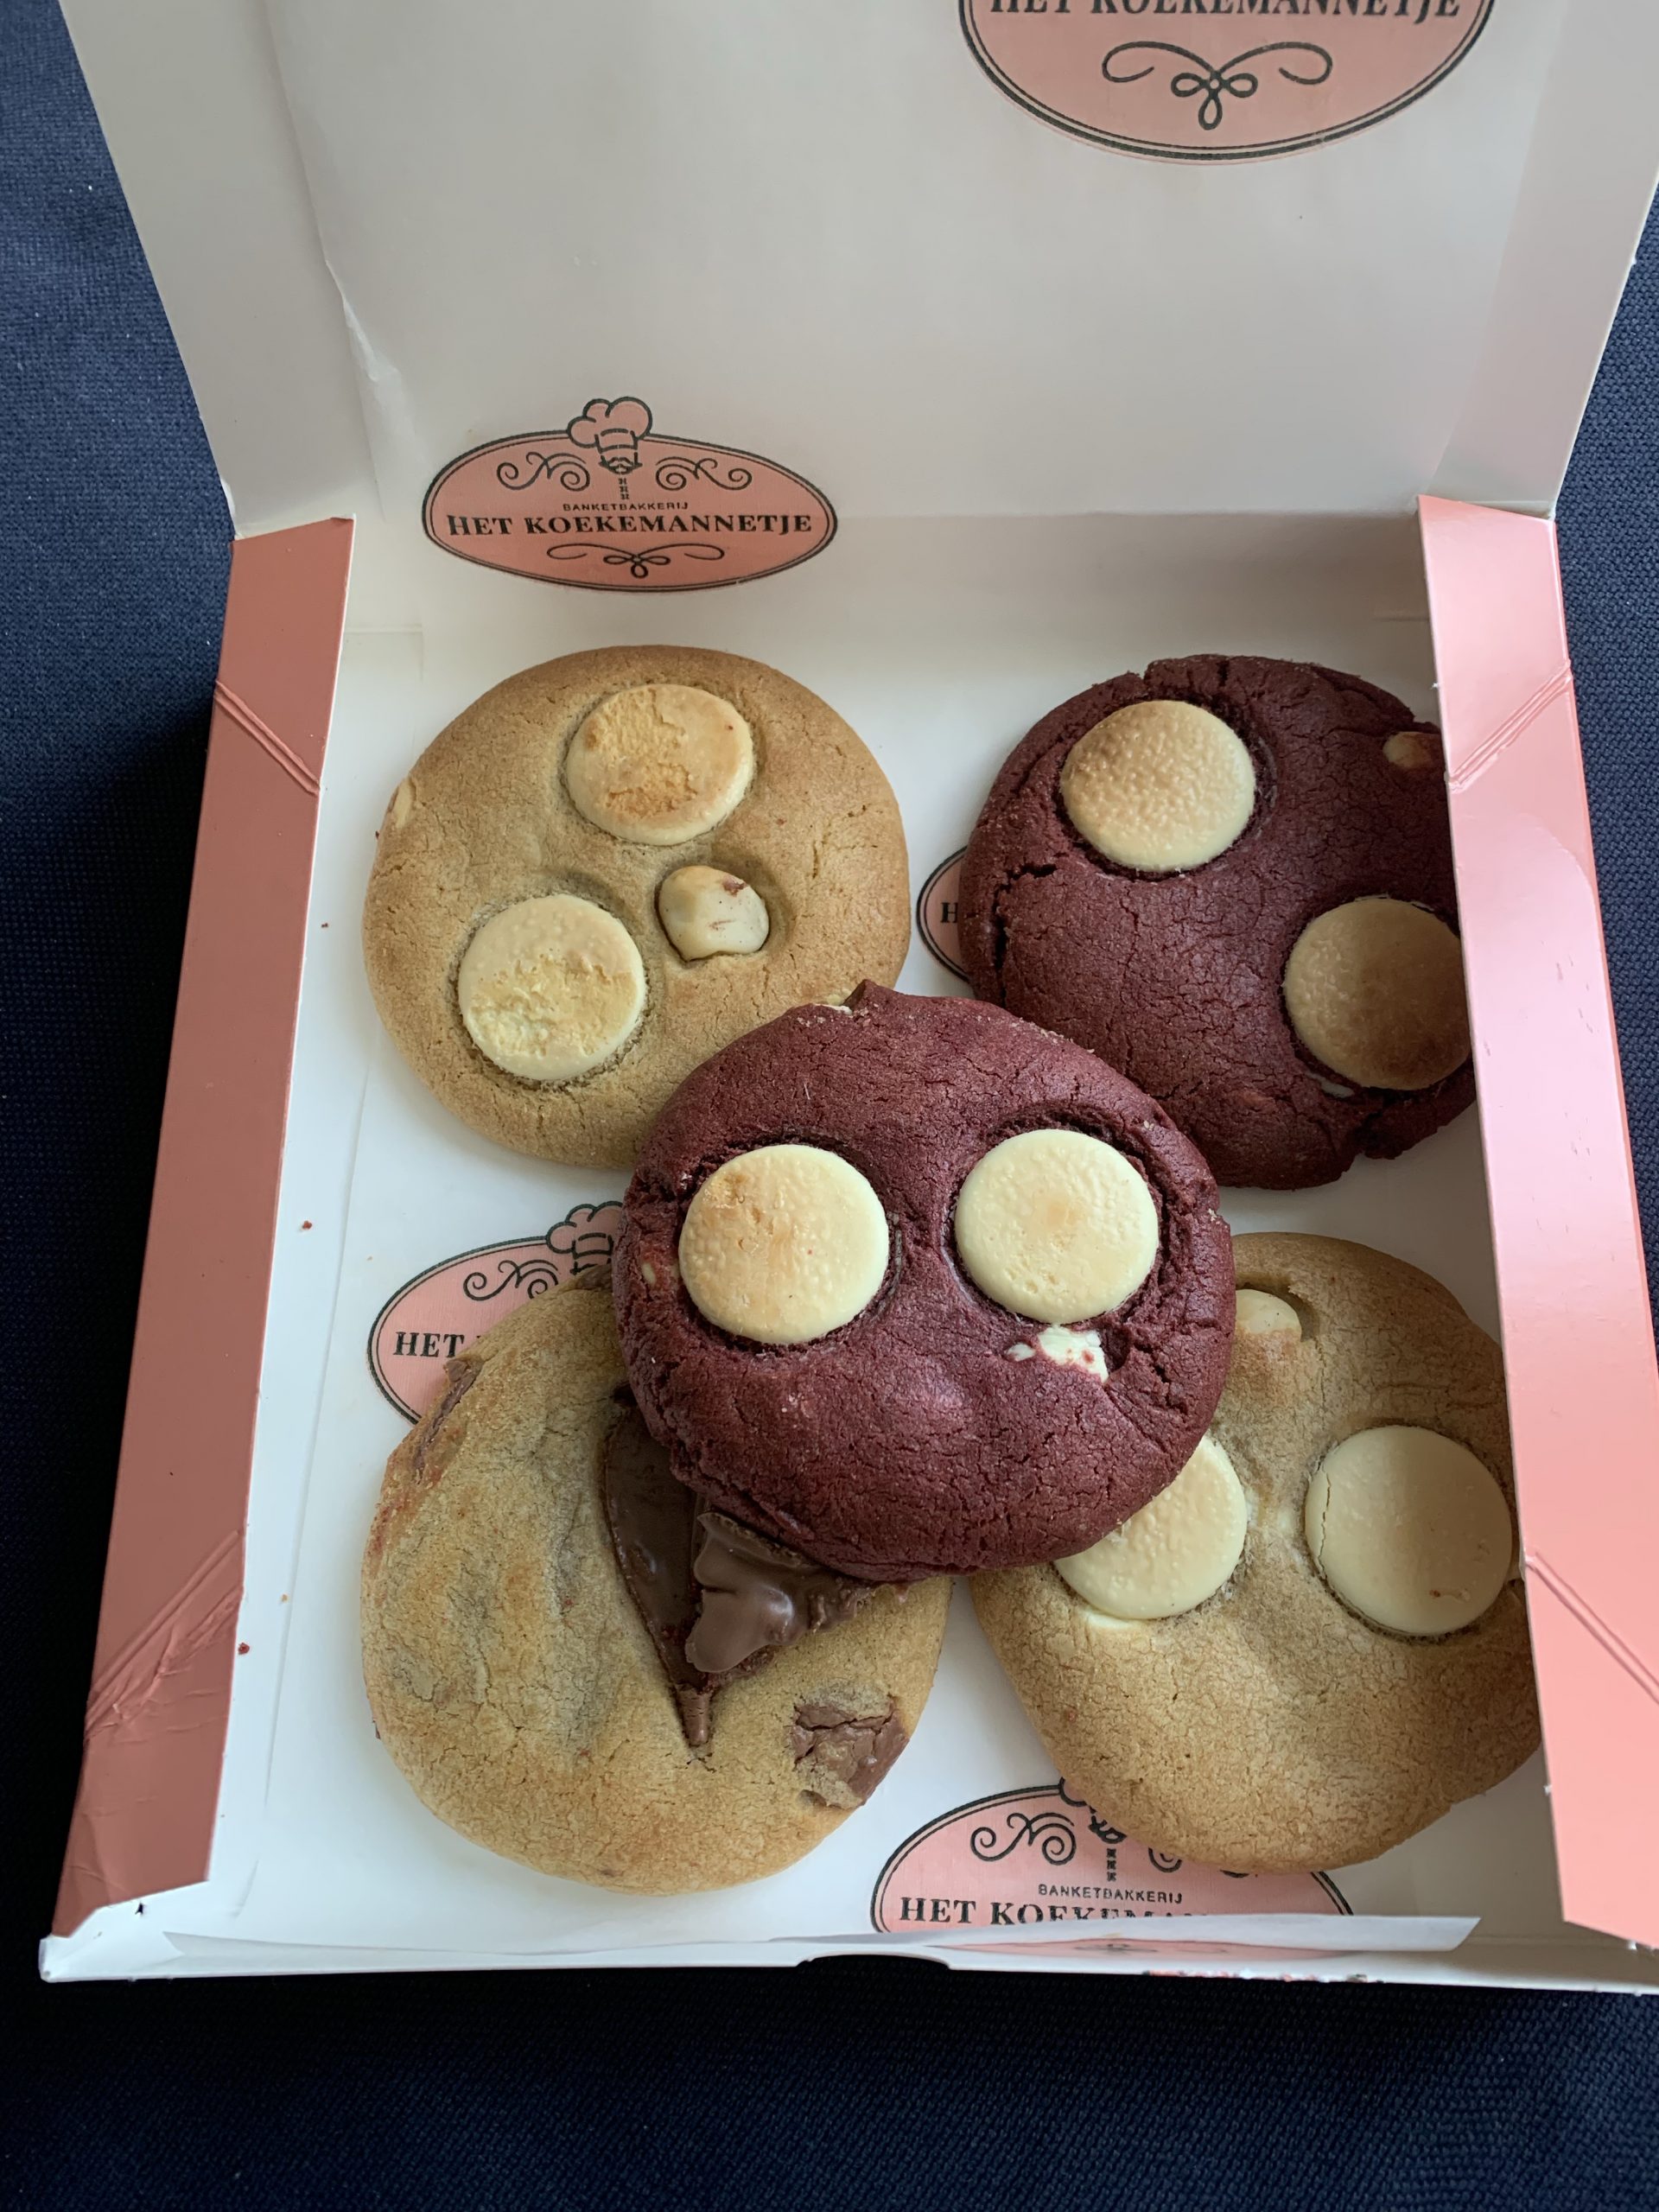 Cookies - Het koekkemannetje